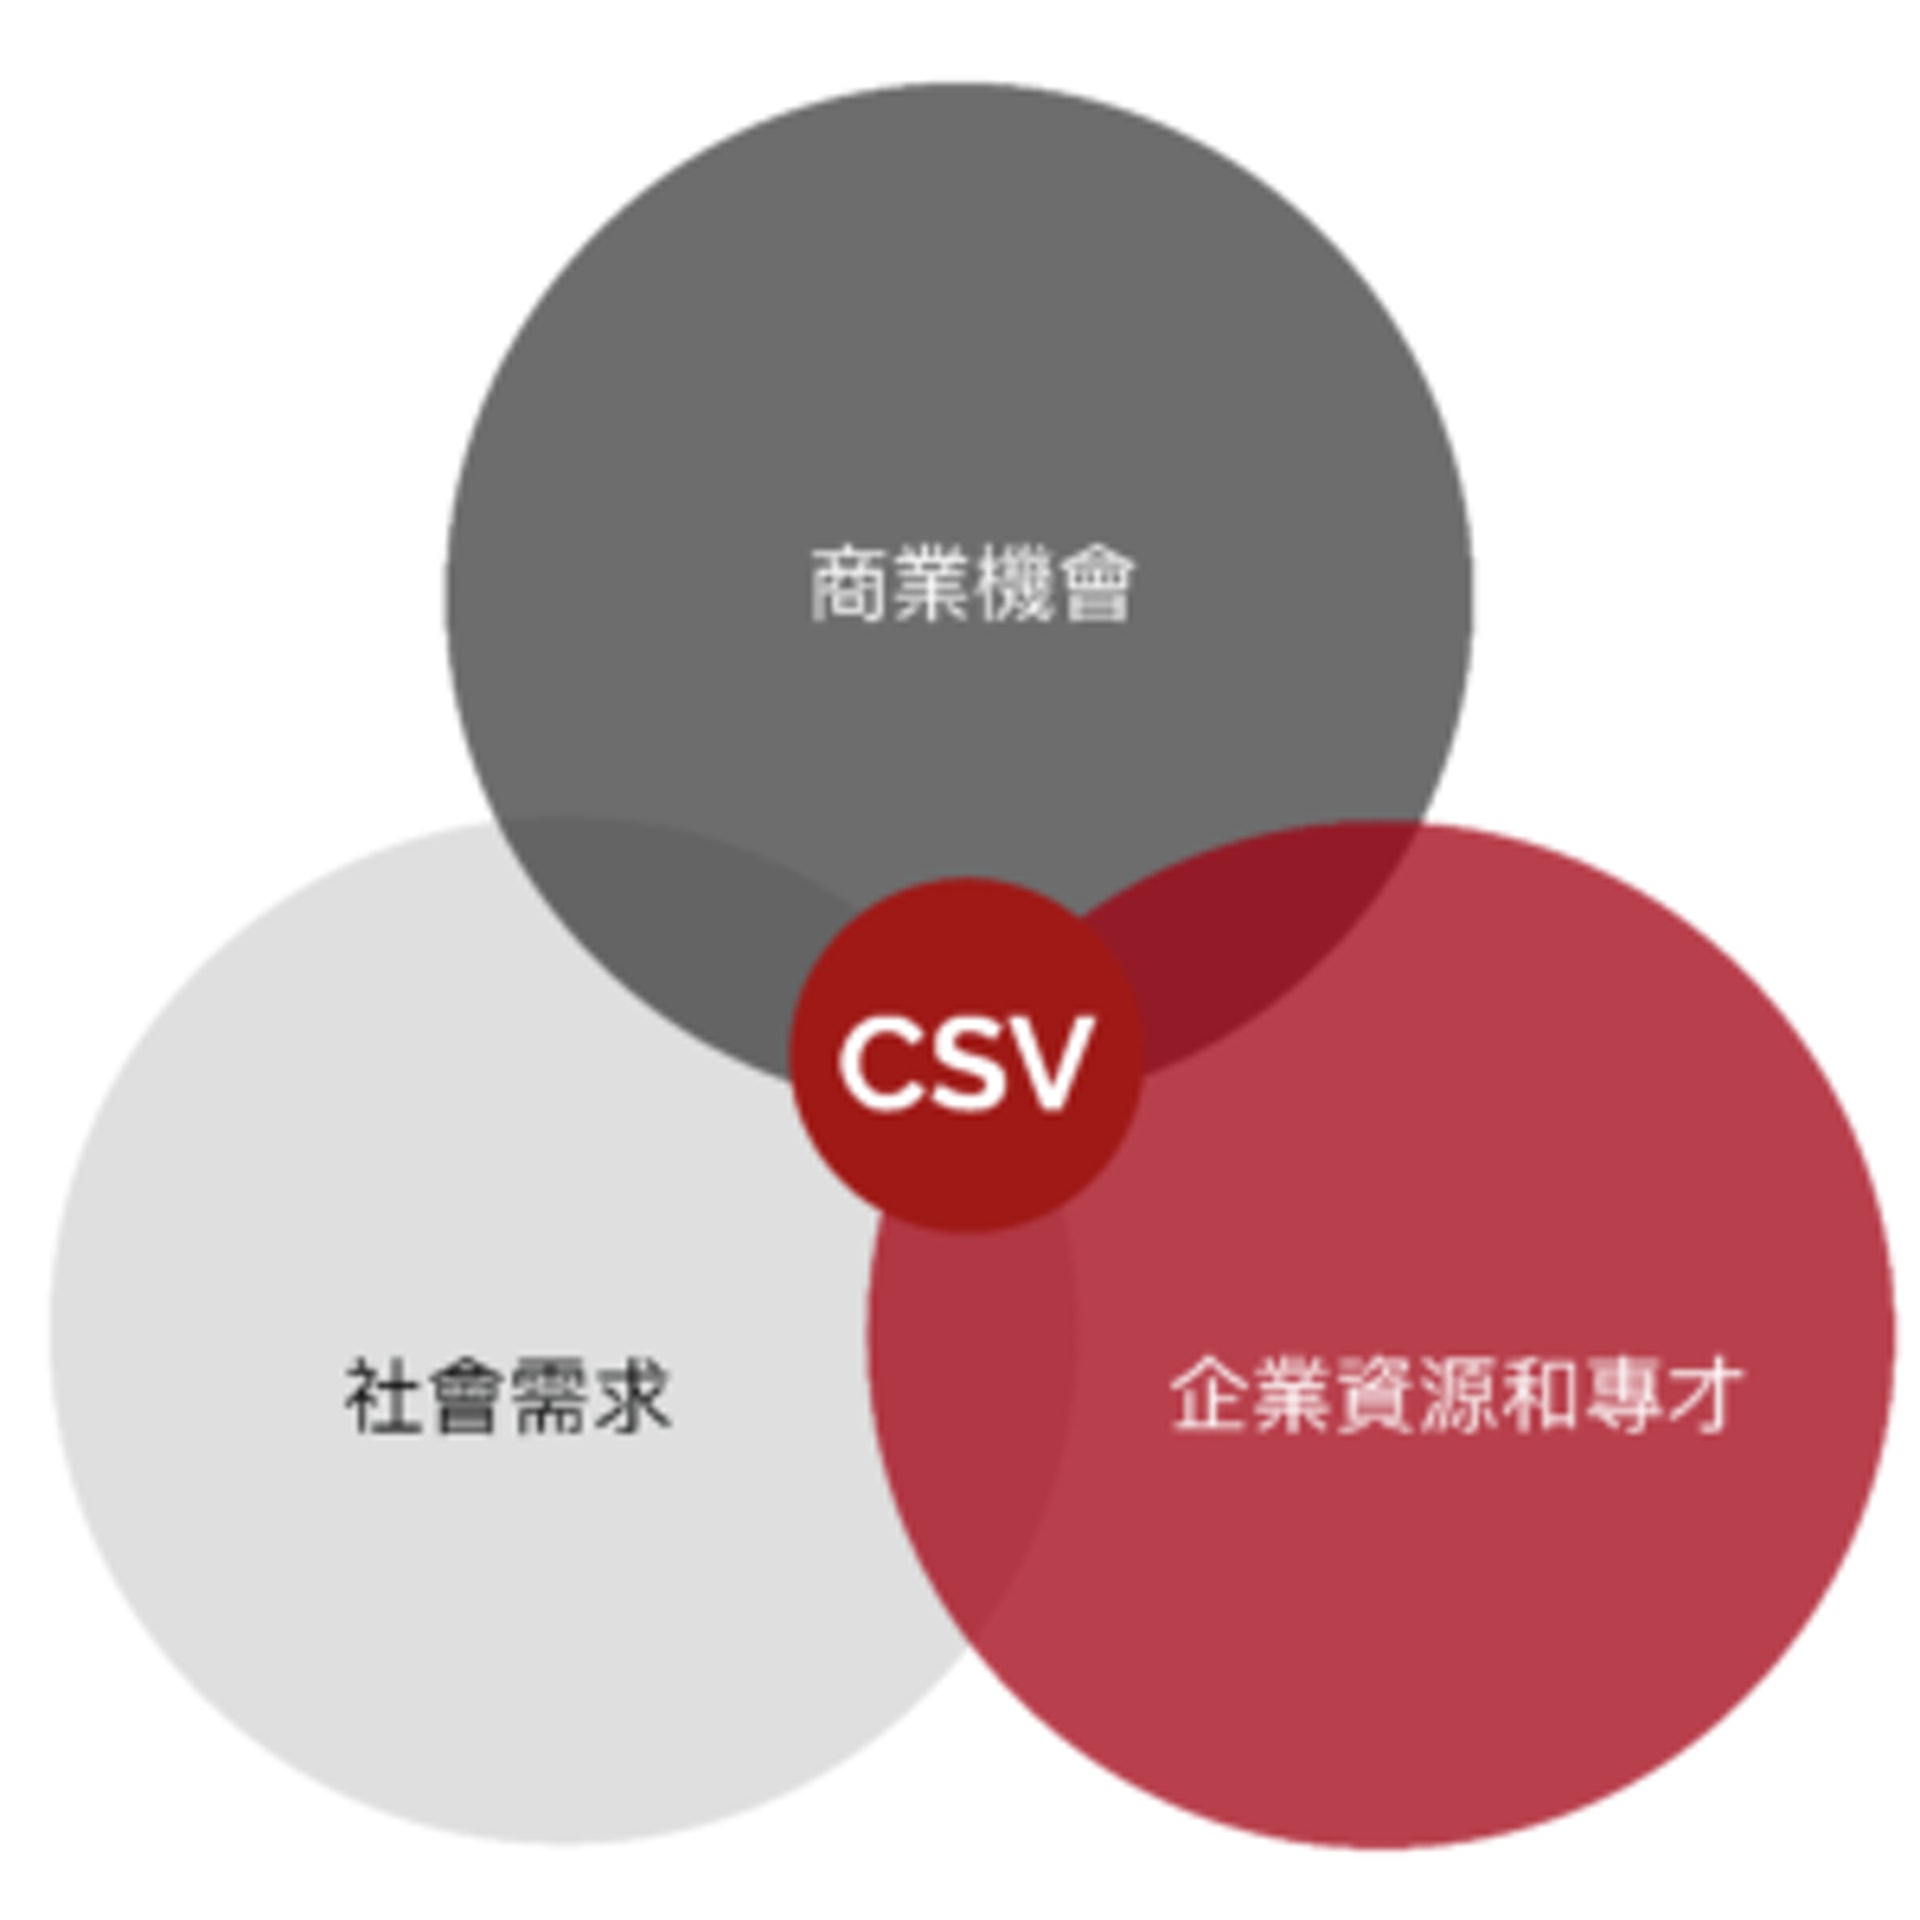 CSV 概念主張讓企業利用自身現有的資源，發掘新商機並提升盈利能力的同時，又能夠幫助解決社會問題，使企業和公眾都能達至雙贏局面。不少企業十分樂意將 CSV 融入業務發展當中。（圖片：sharedvaluehk）